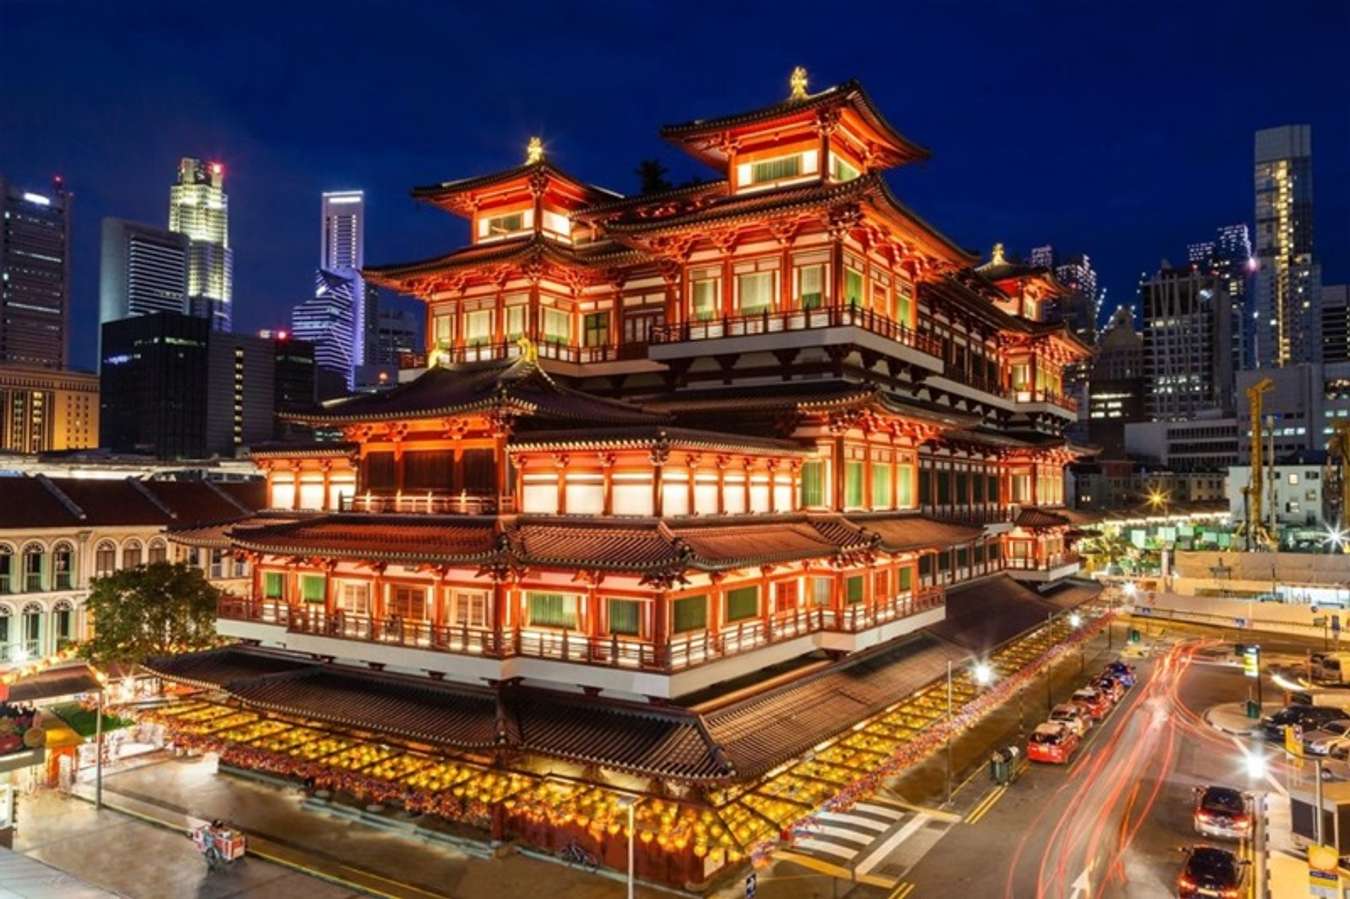 Chinatown ở Singapore: Kinh nghiệm khám phá phố người Hoa đầy màu sắc